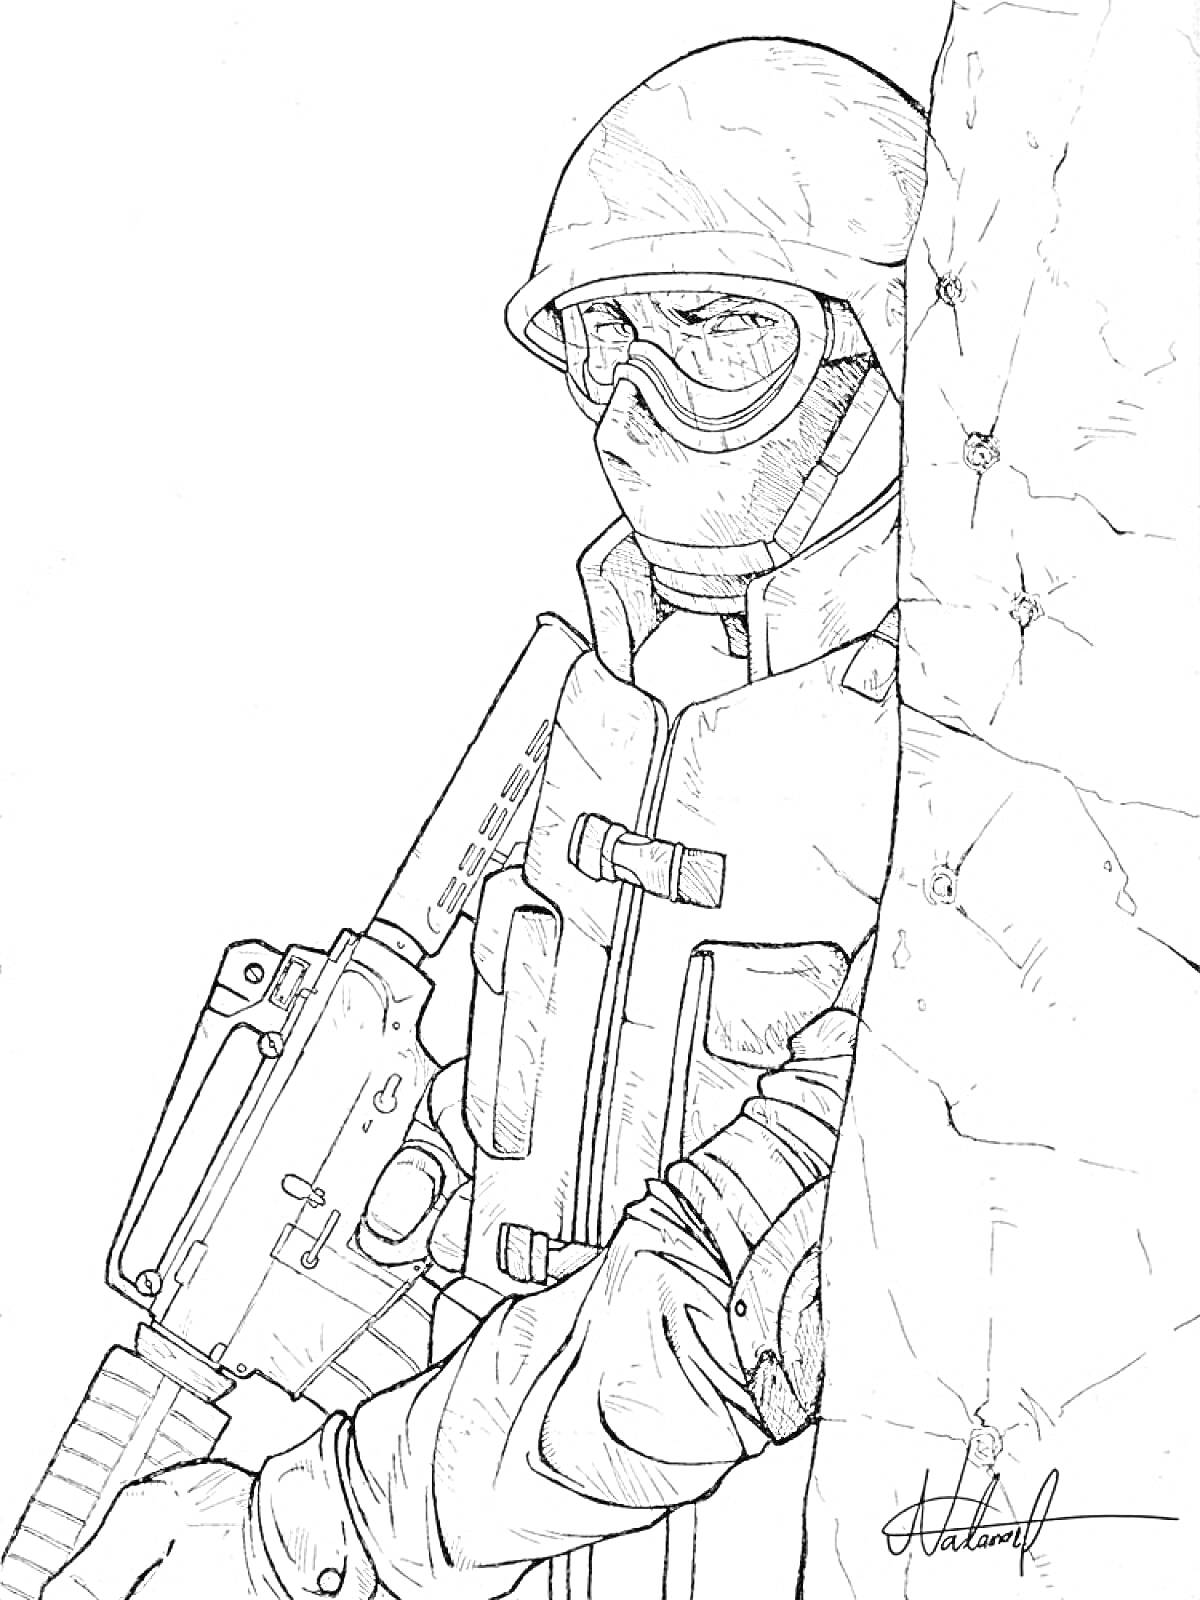 Солдат с штурмовой винтовкой, стоящий за стеной